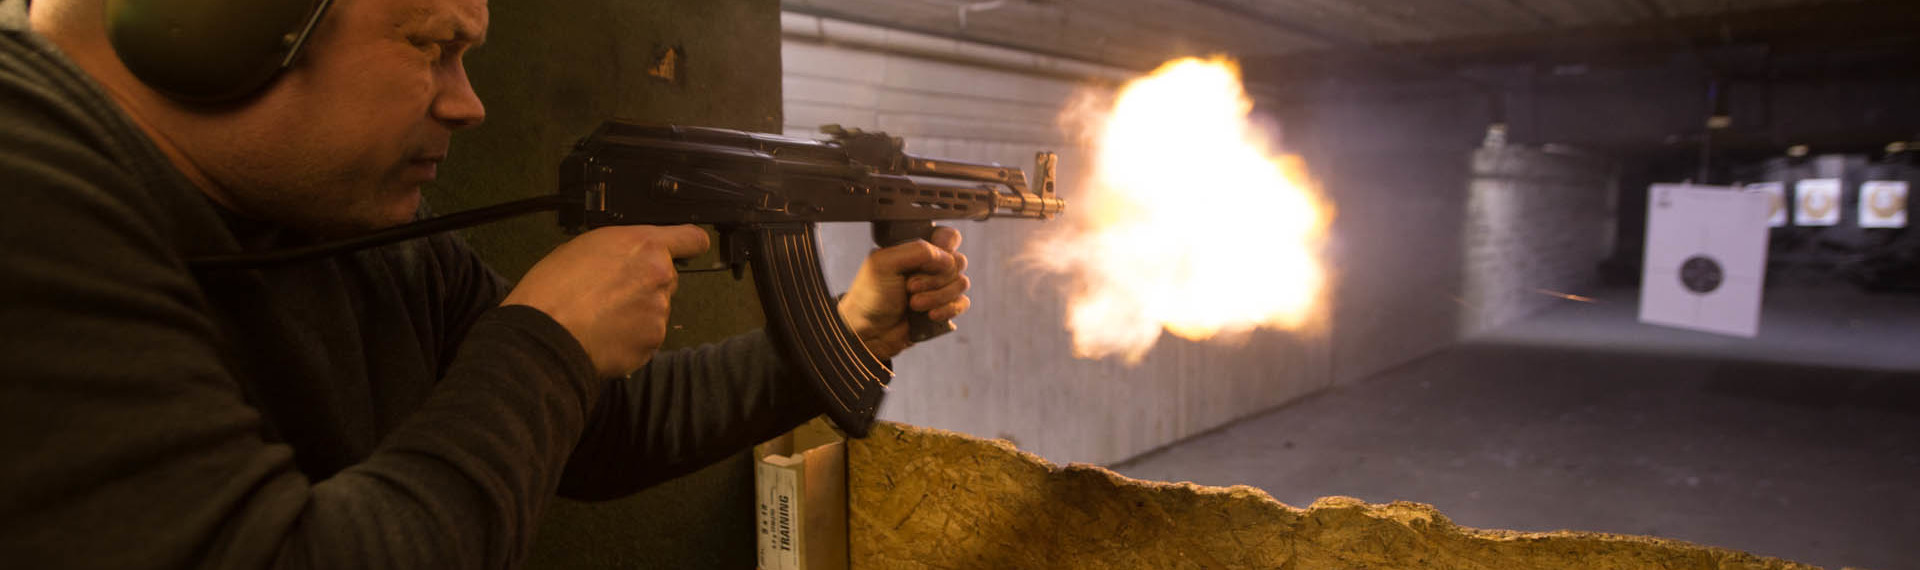 AK-47 Skytte - testa på Gdansk fetaste skjutpaket!